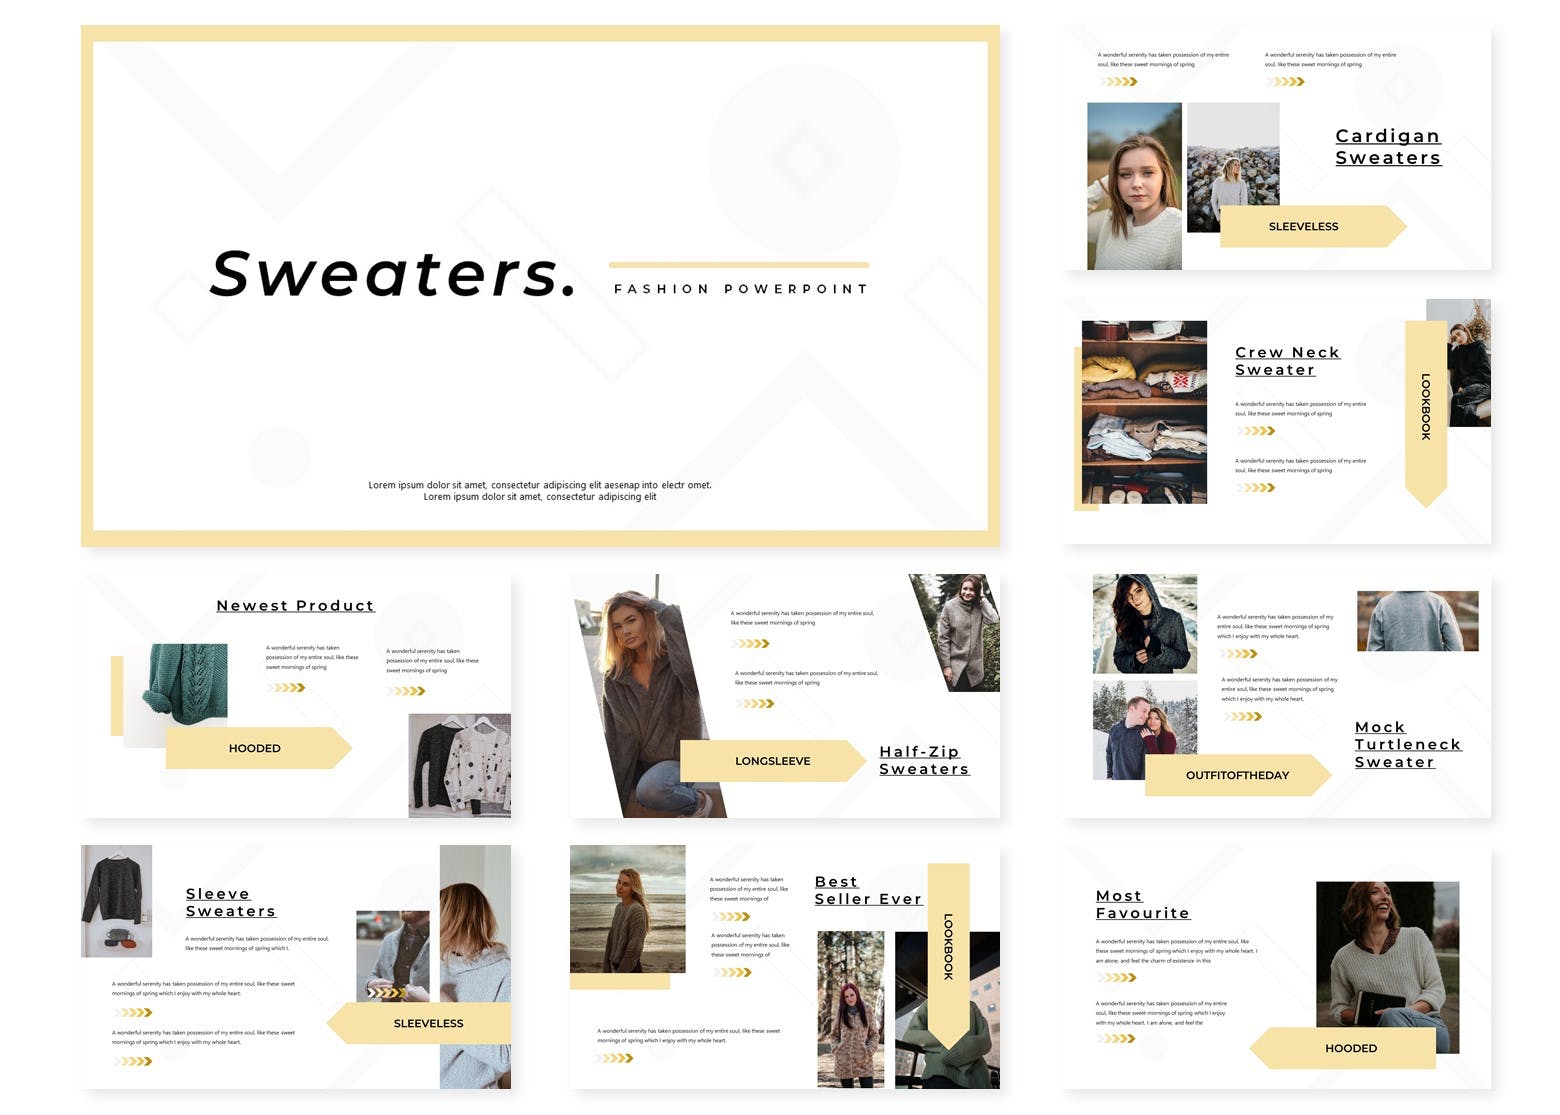 服装品牌新品上市方案PPT幻灯片模板 Sweaters | Powerpoint Template插图(1)